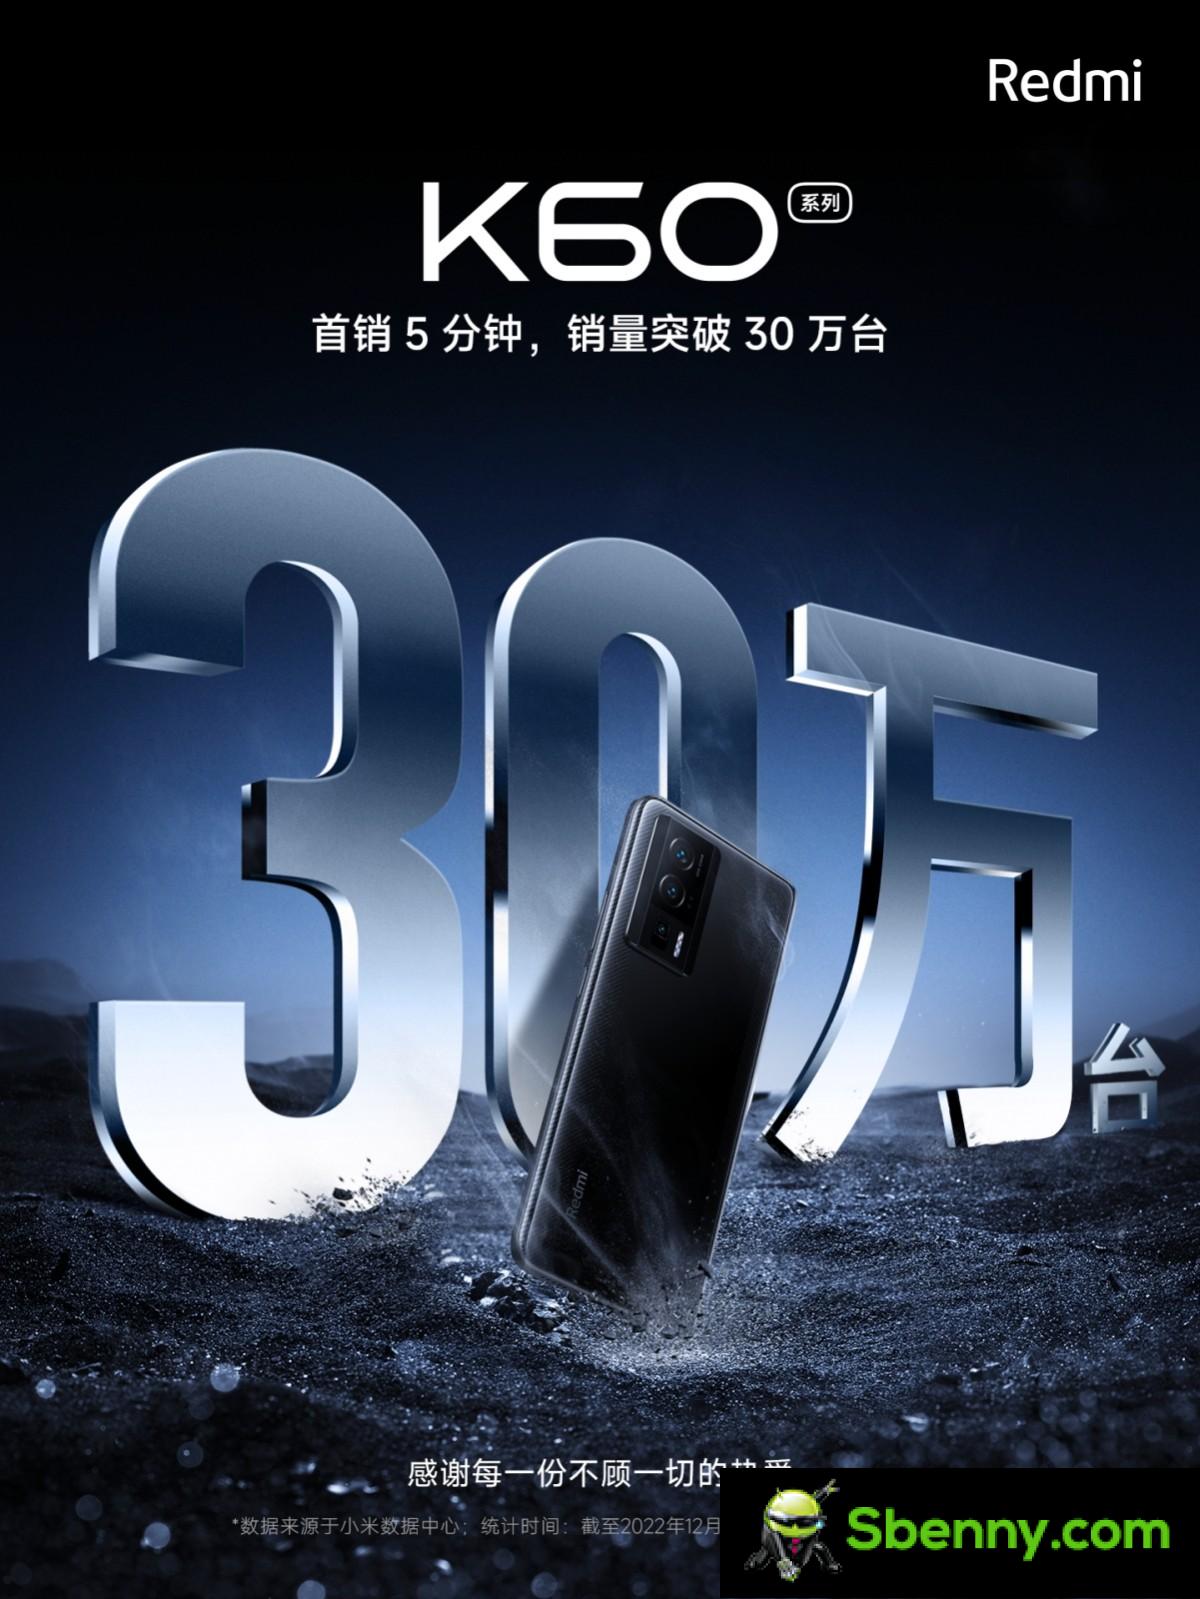 Xiaomi pusht 300,000 Redmi K60-telefoons in 5 minuten